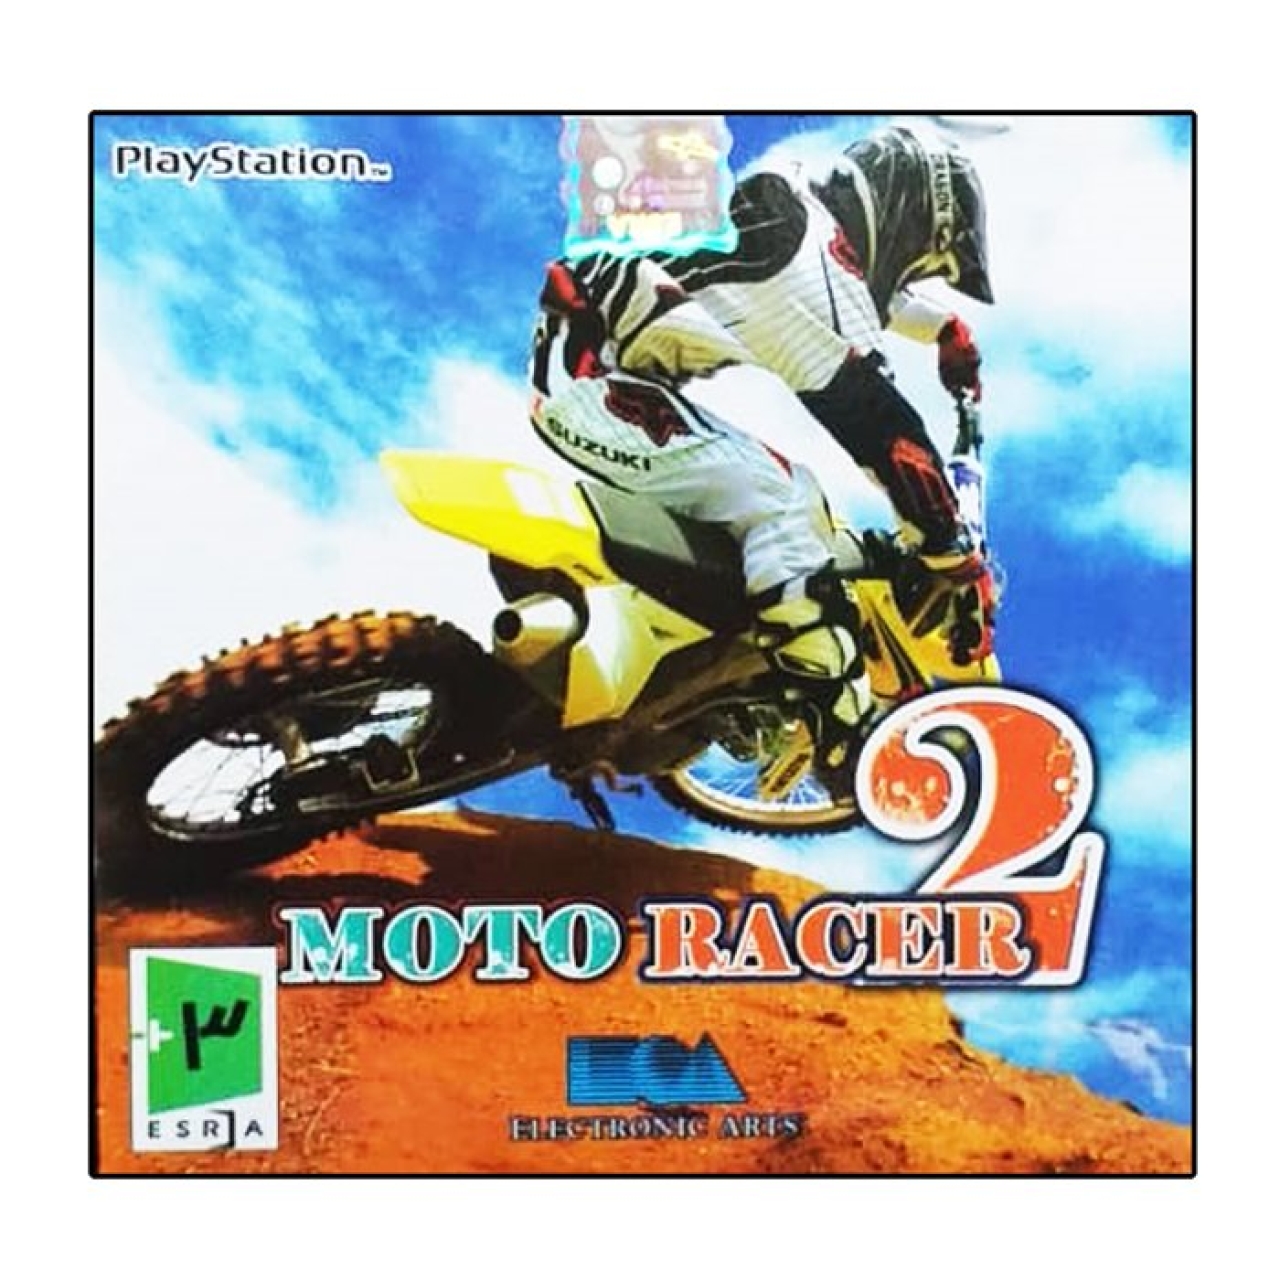 بازی  Moto racer2 مخصوص ps1